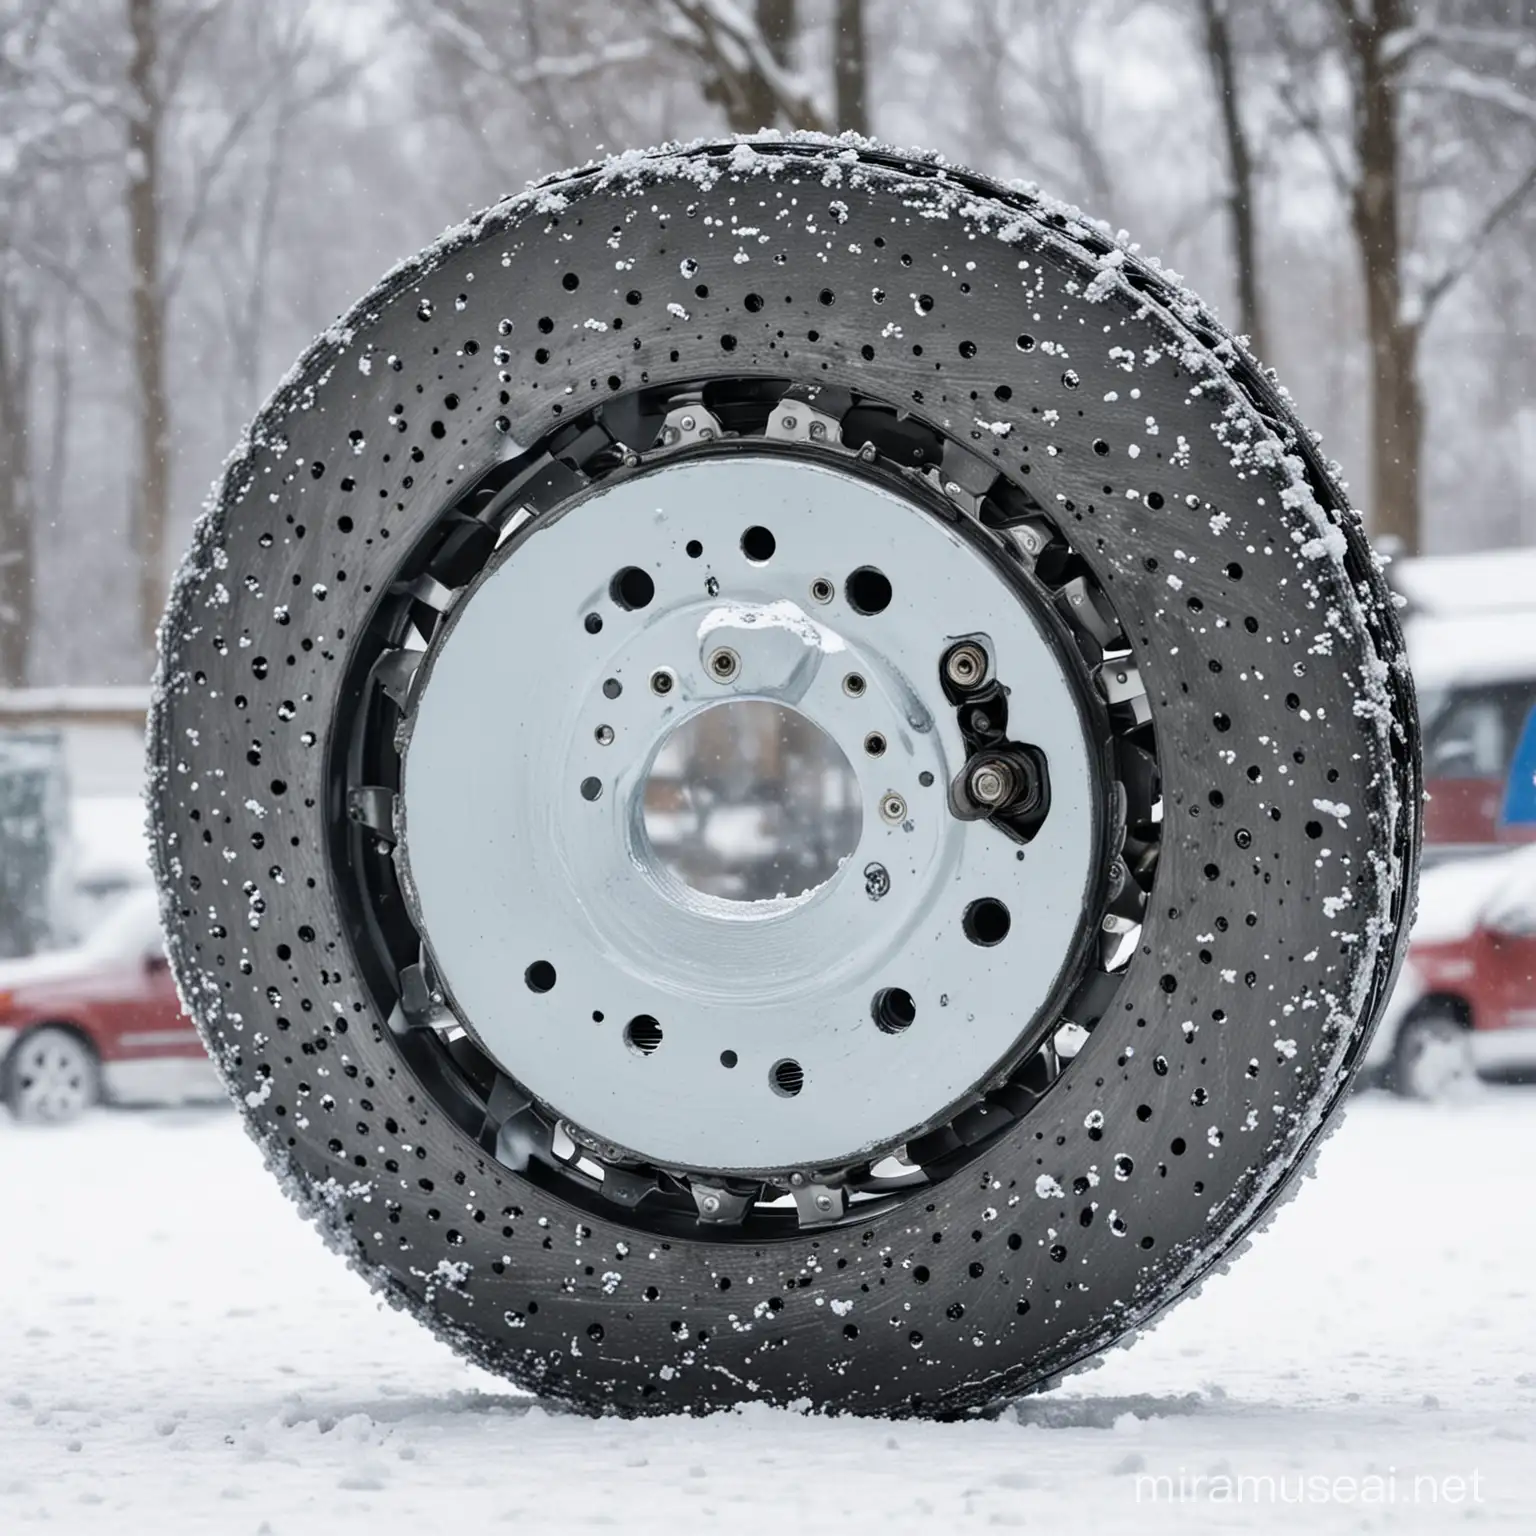 背景为雪地，汽车刹车盘的展示
